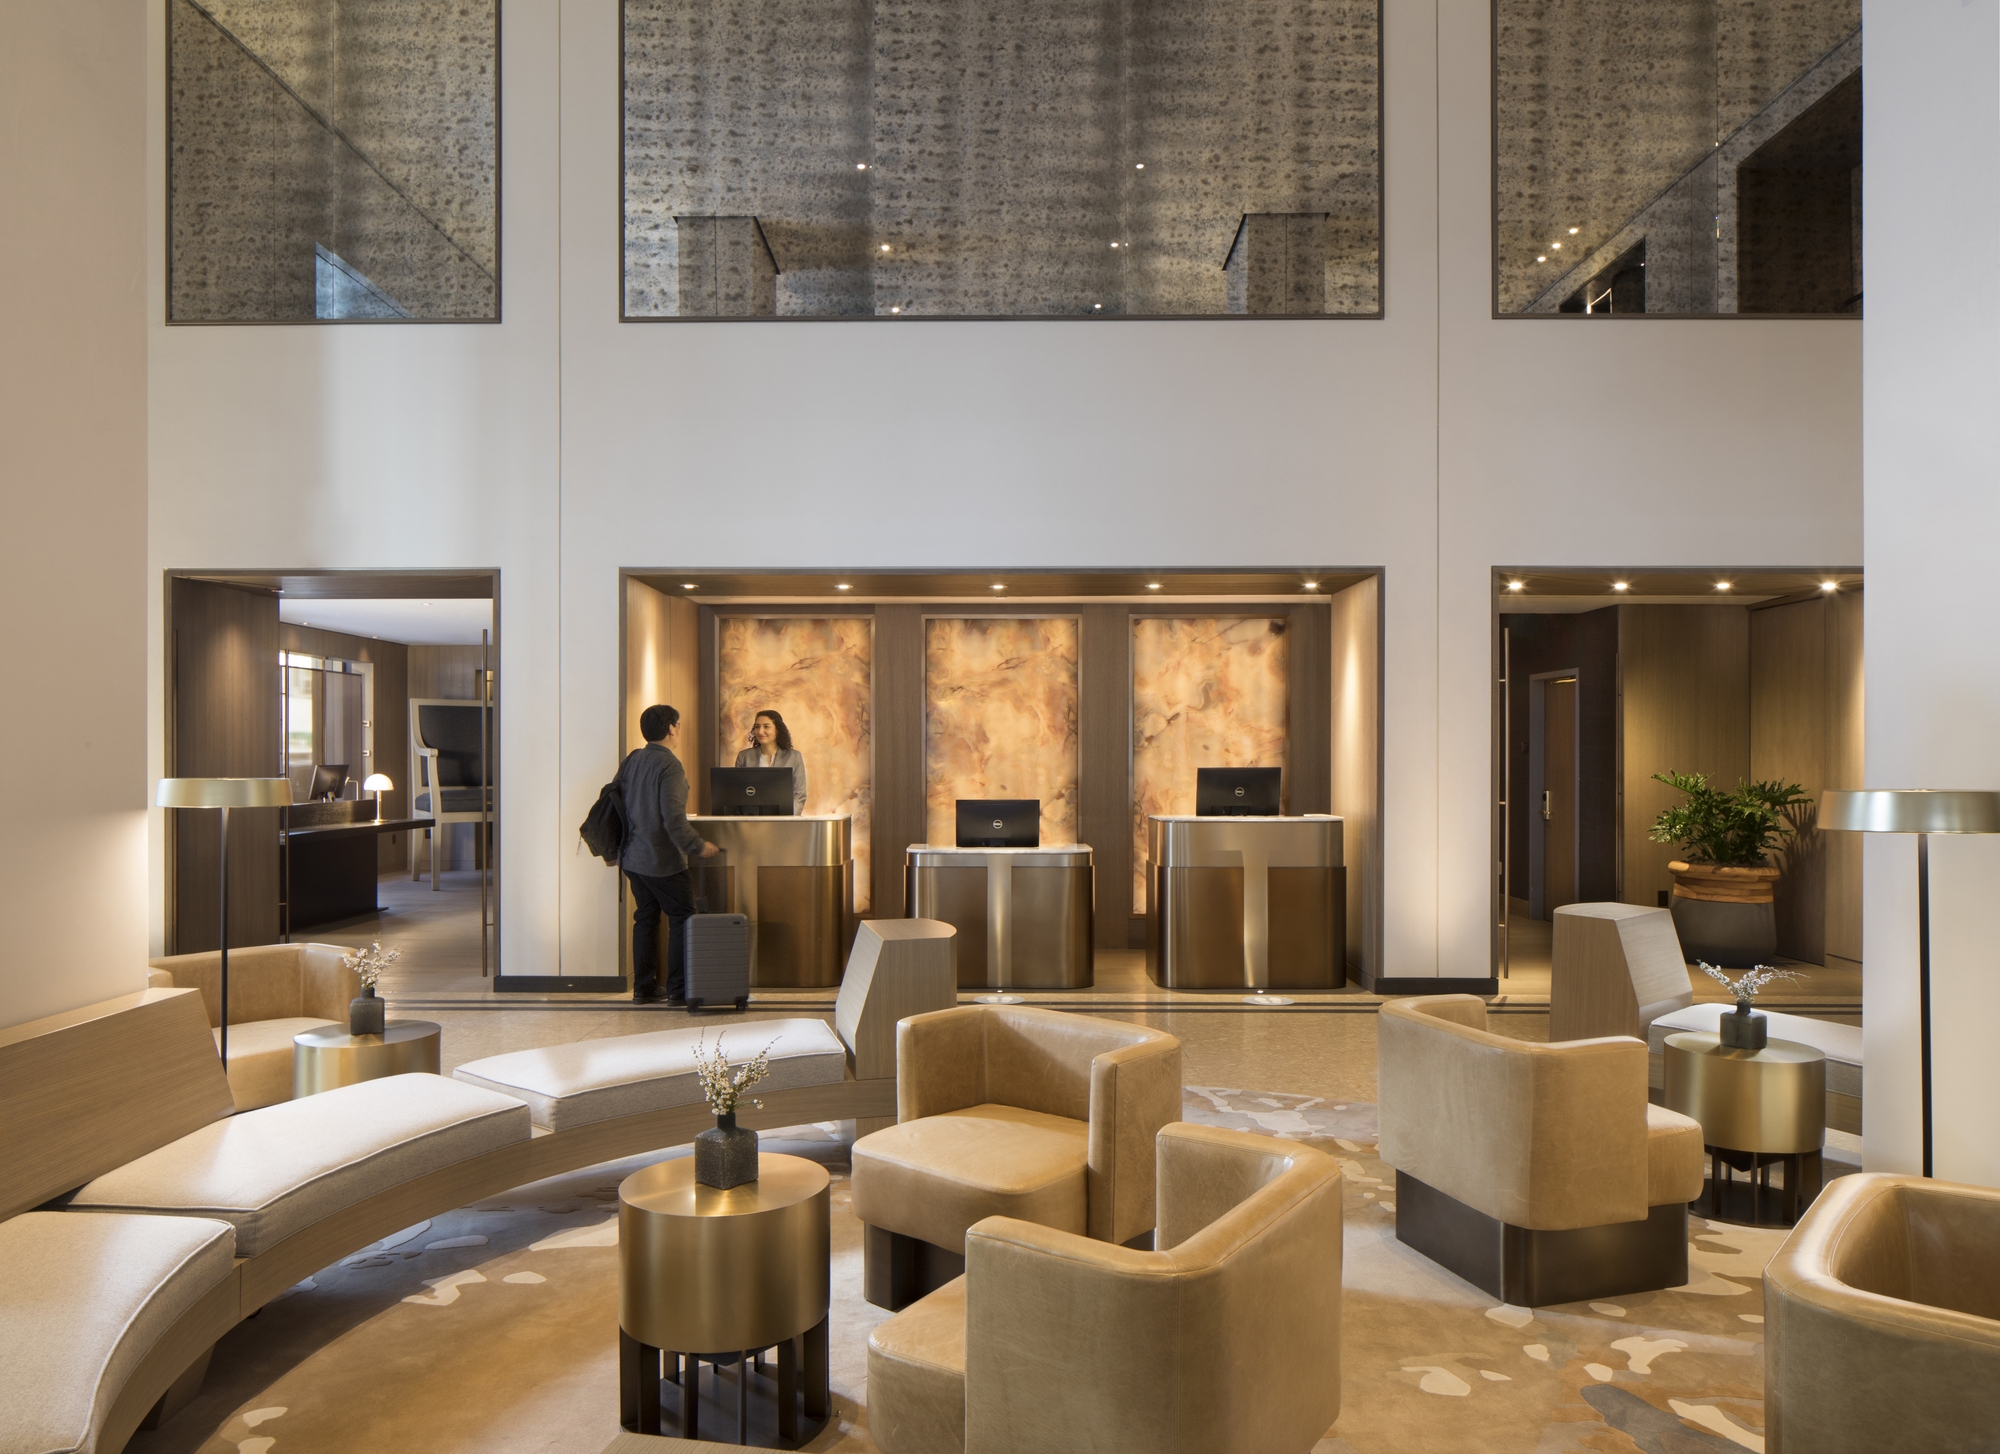 克利夫特皇家索尼斯塔酒店|ART-Arrakis | 建筑室内设计的创新与灵感